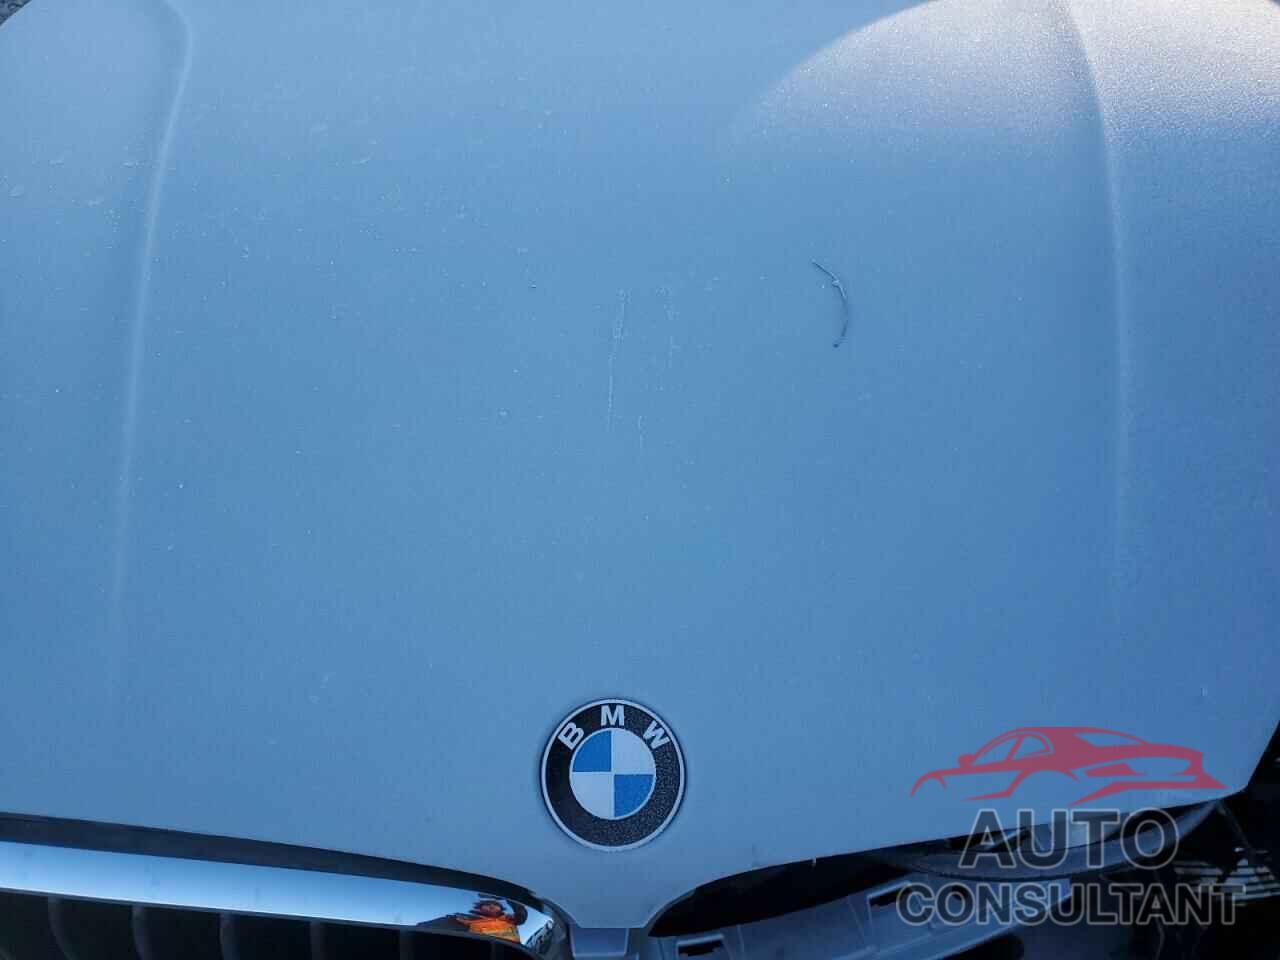 BMW X5 2016 - 5UXKR0C56G0S88928